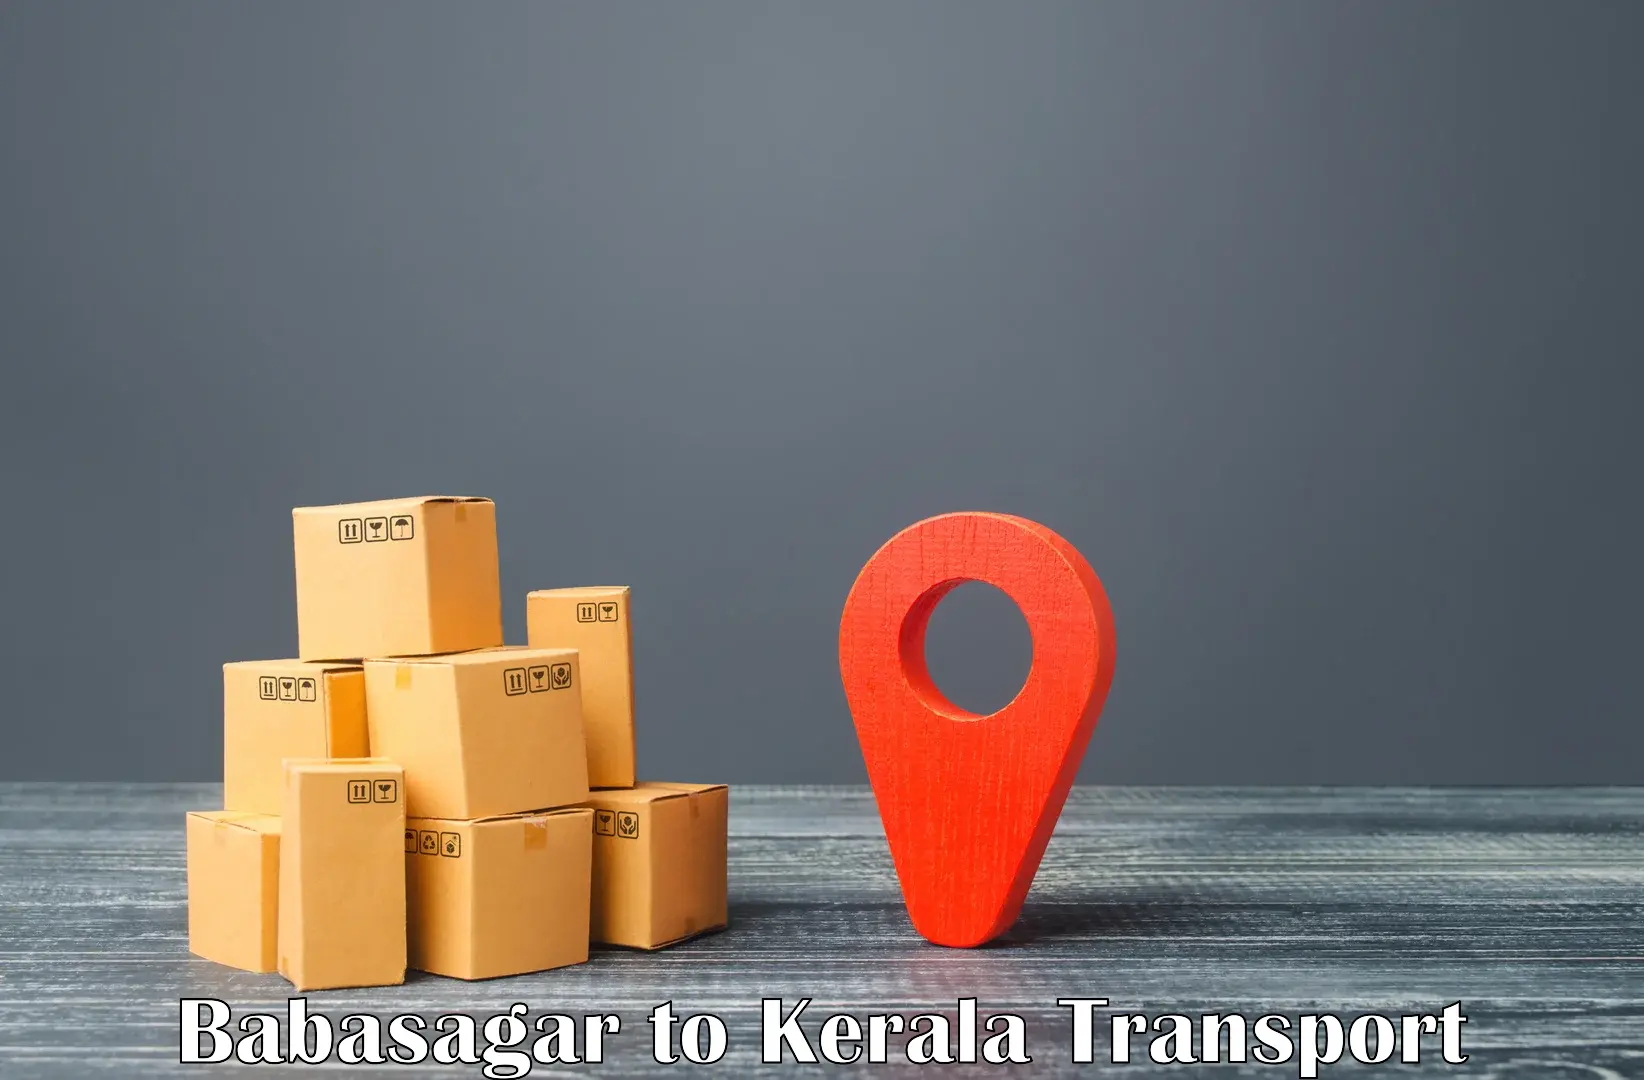 Air cargo transport services Babasagar to Kozhikode